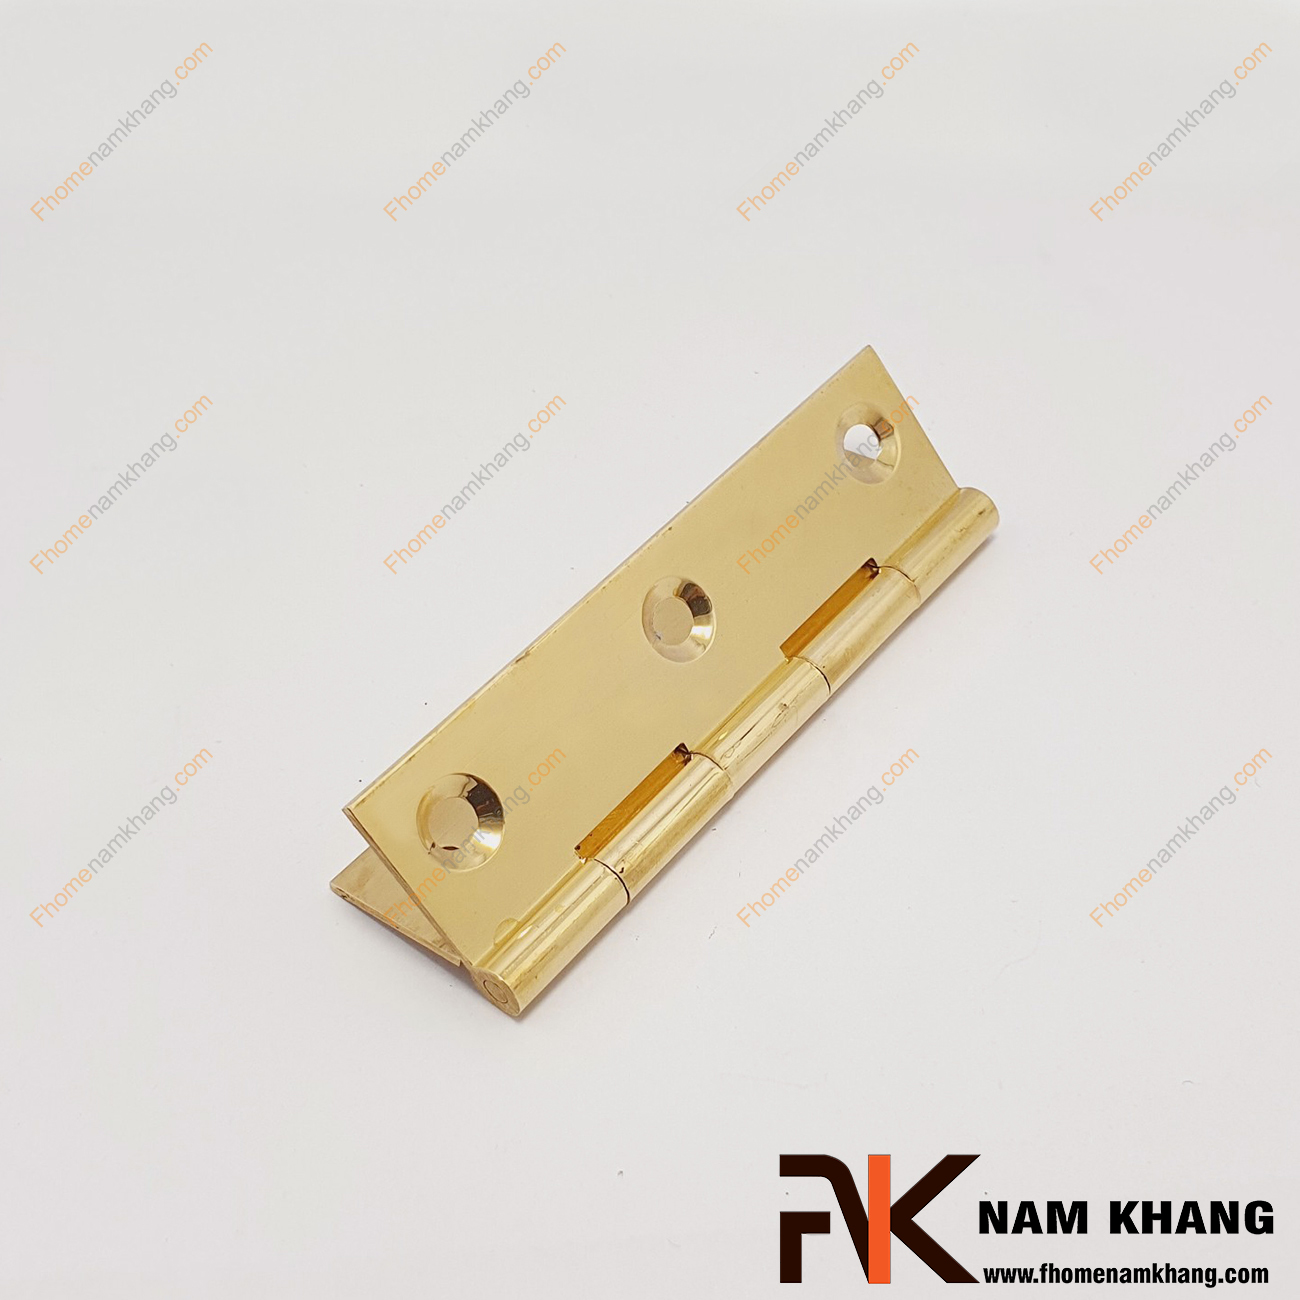 Bản lề cửa tủ màu đồng vàng NK470-9FDO được sản xuất từ đồng cao cấp. Bề mặt được xử lý cao, với kích thước nhỏ chuyên dùng cho các dạng tủ kệ nhỏ, cánh cửa tủ, cánh hộp gỗ, cánh thùng gỗ và hộp quà tặng.